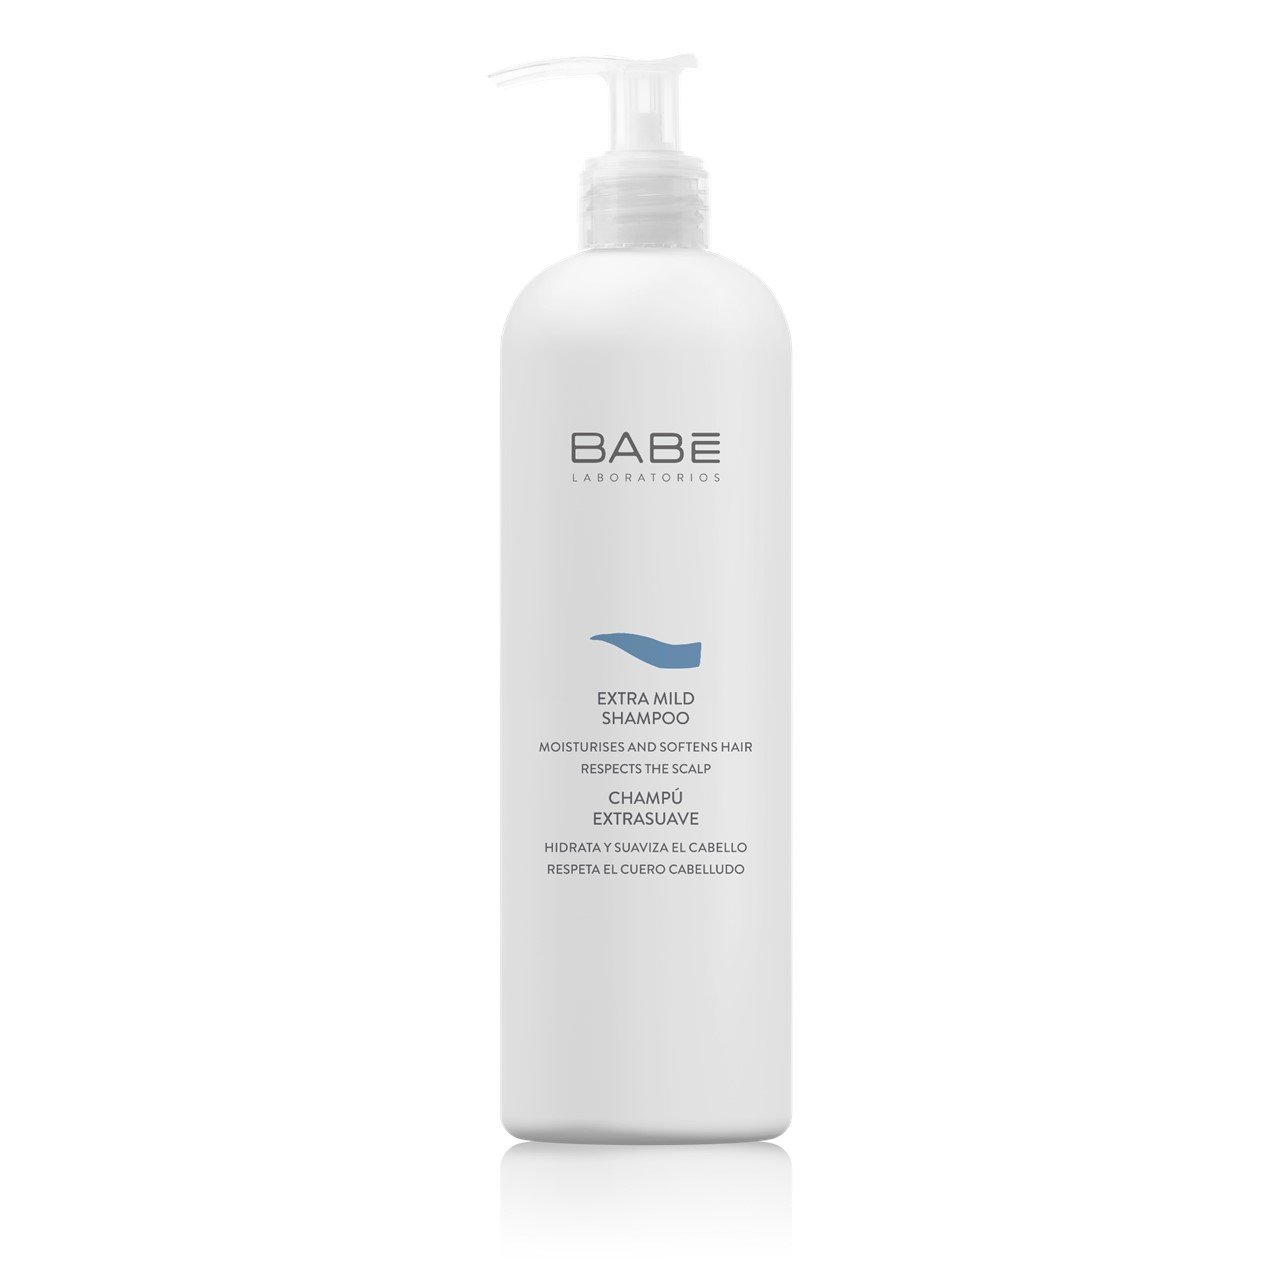 BABE Extra Mild Shampoo 500ml - интернет-магазин профессиональной косметики Spadream, изображение 33501